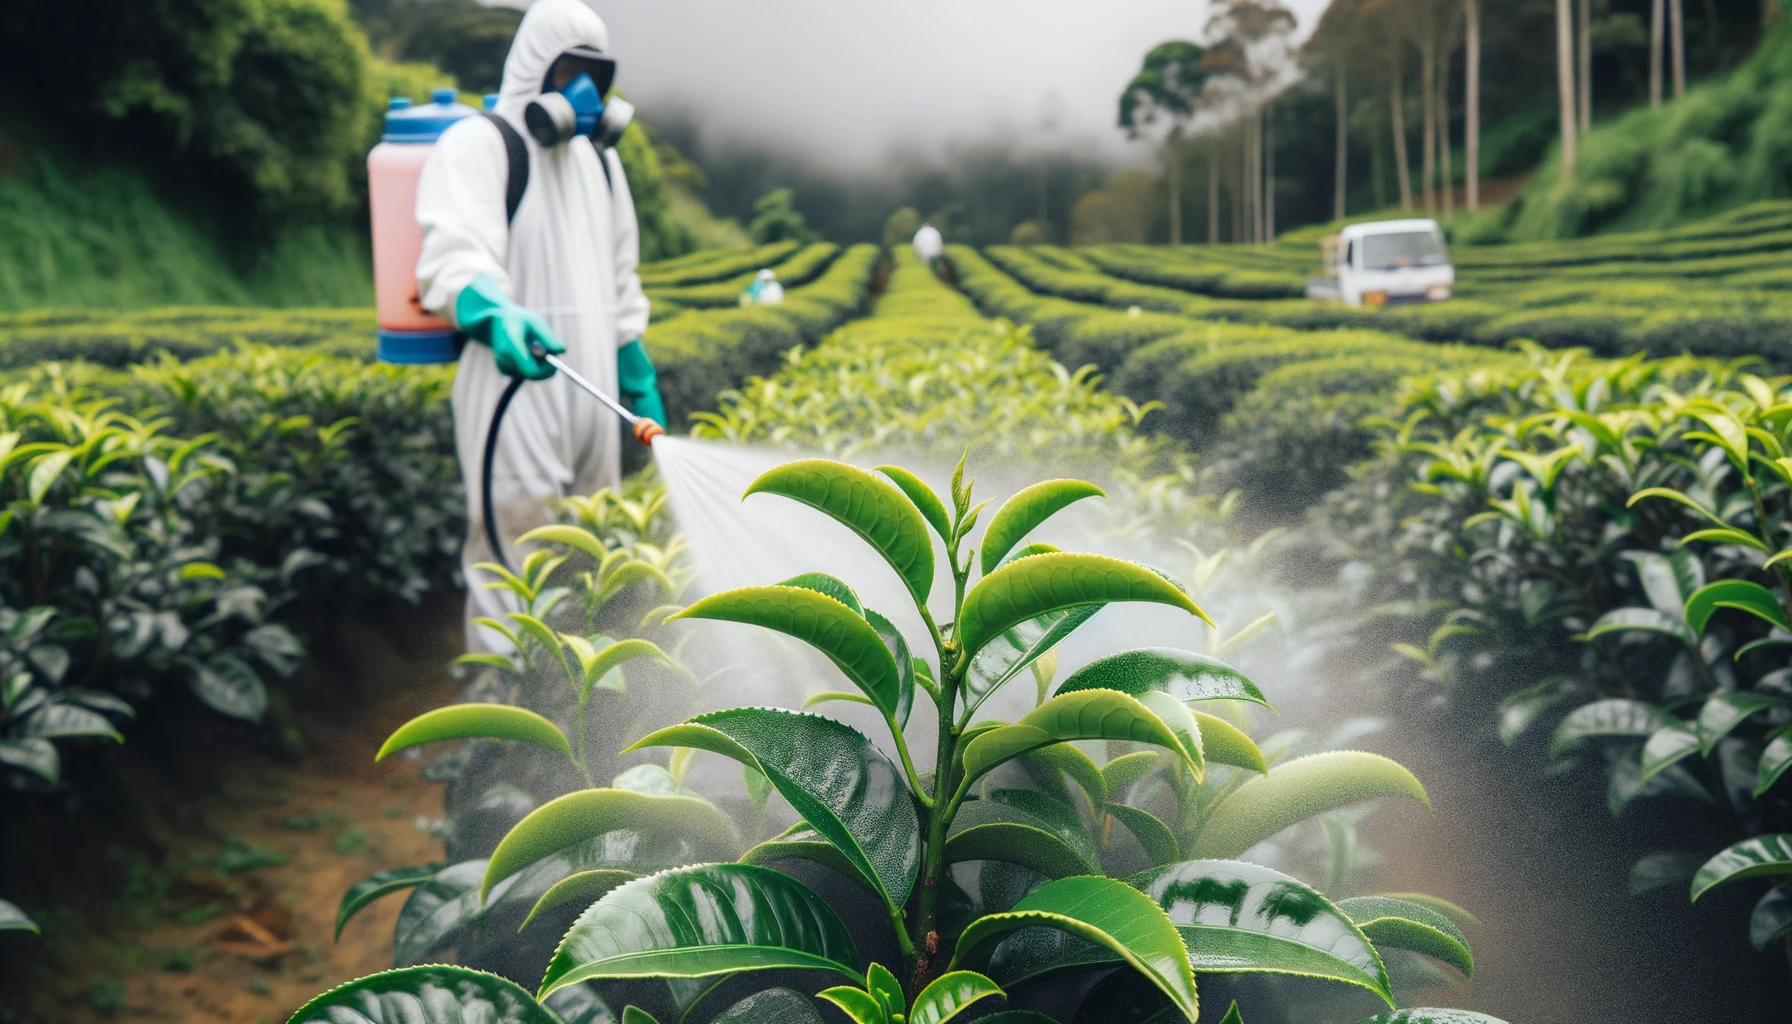 Travailleur en équipement de protection pulvérisant des produits chimiques sur des plantes de camellia sinensis, ce qui signifie une agriculture non biologique.